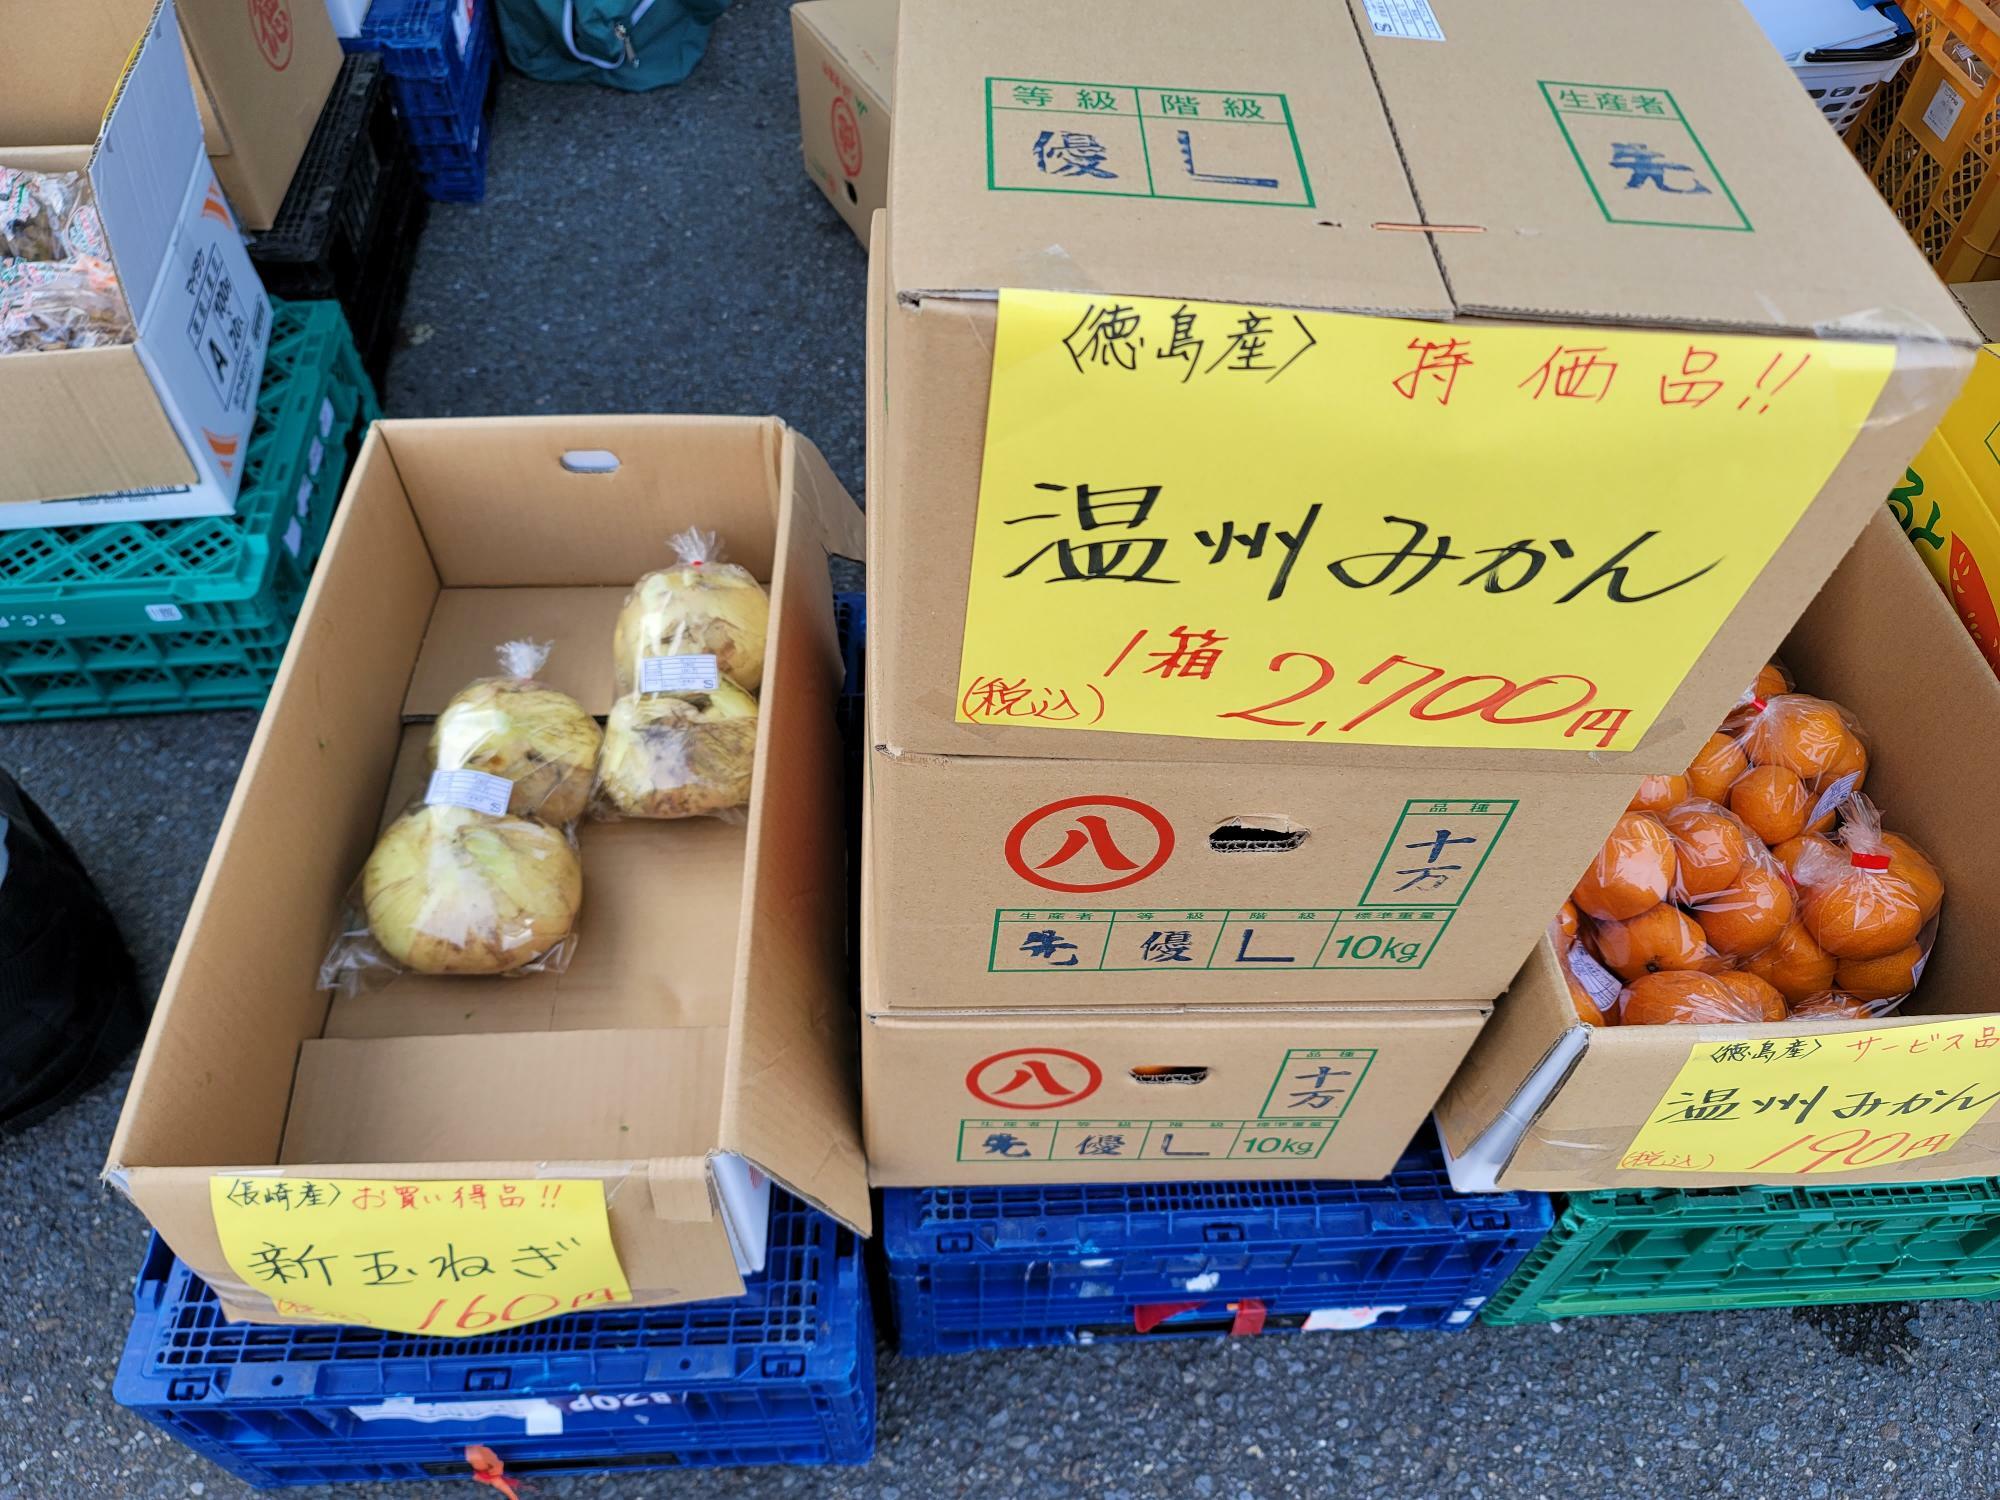 出店中の「まごころ青果店」で販売されていた野菜や果物。